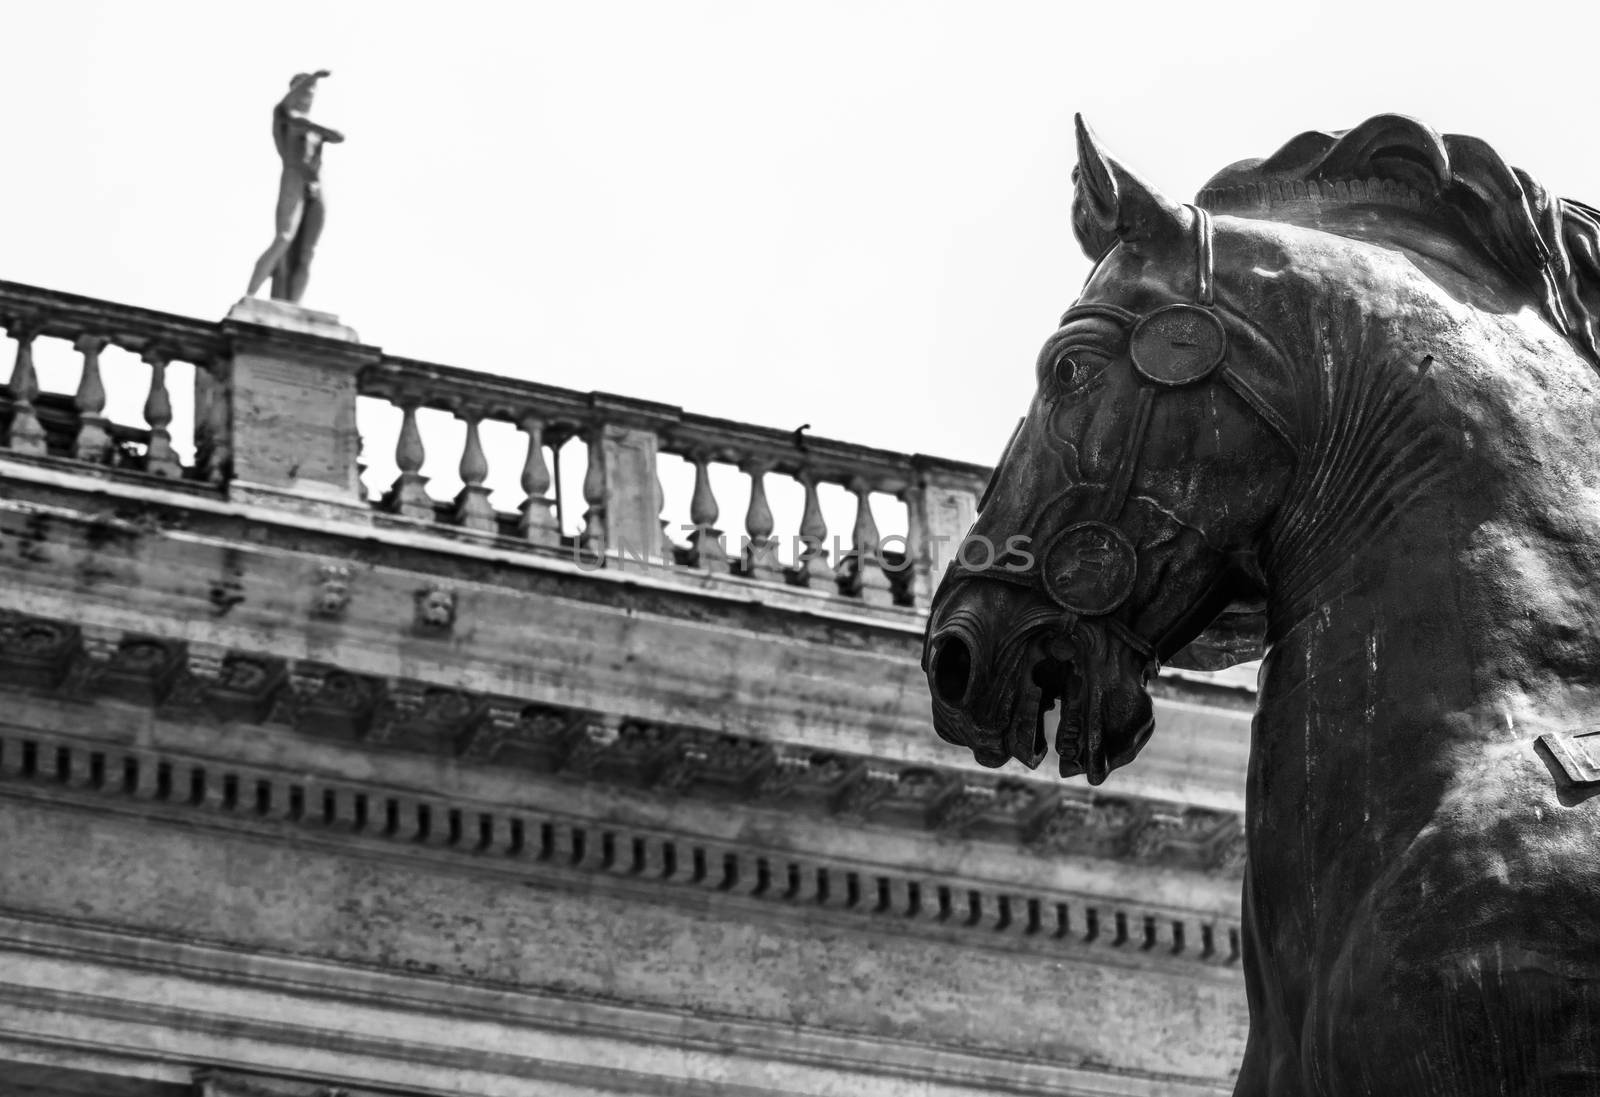 The Bronze Horse by rarrarorro